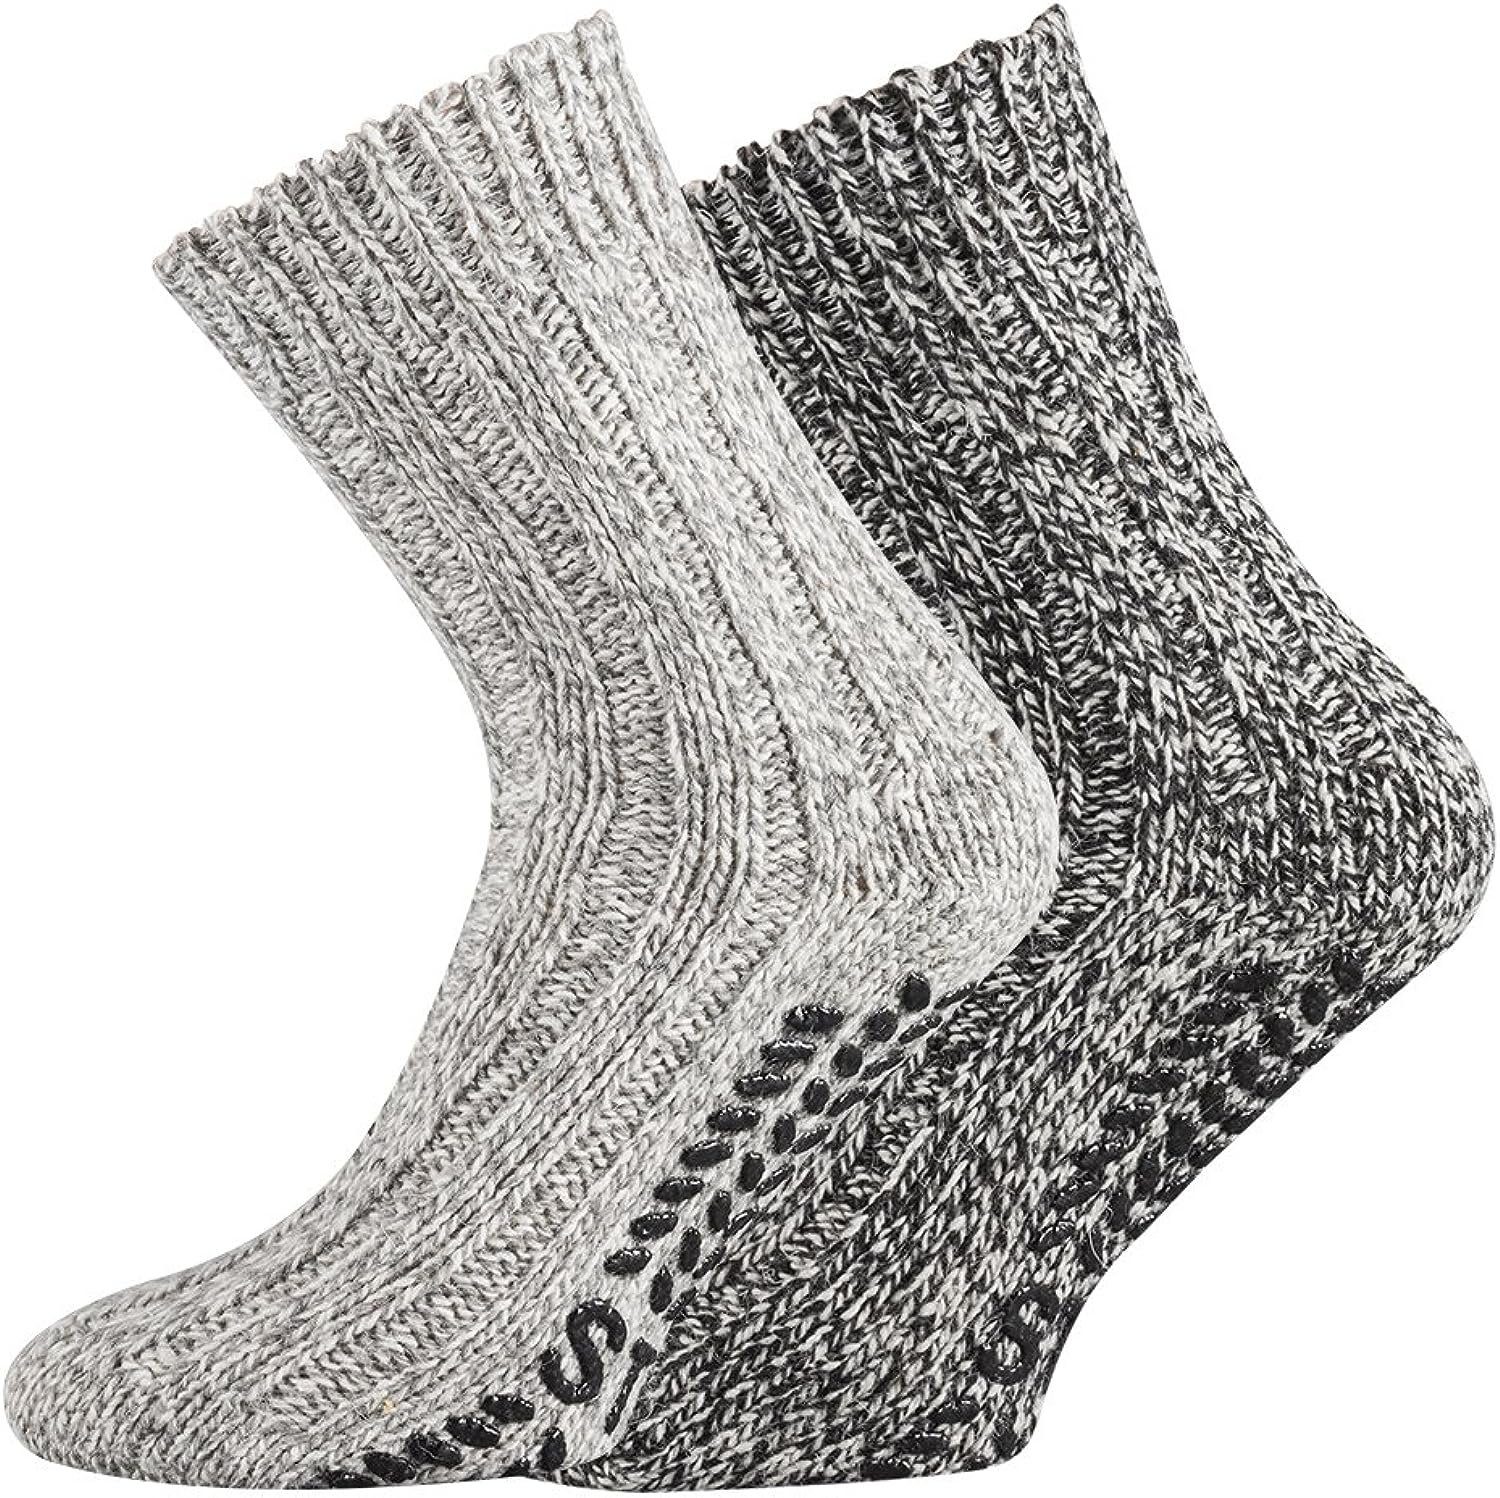 TippTexx 24 ABS-Socken 2 Paar warme ABS-Stopper-Norweger-Socken EIN ECHTER HAUSSCHUH-ERSATZ Grautöne